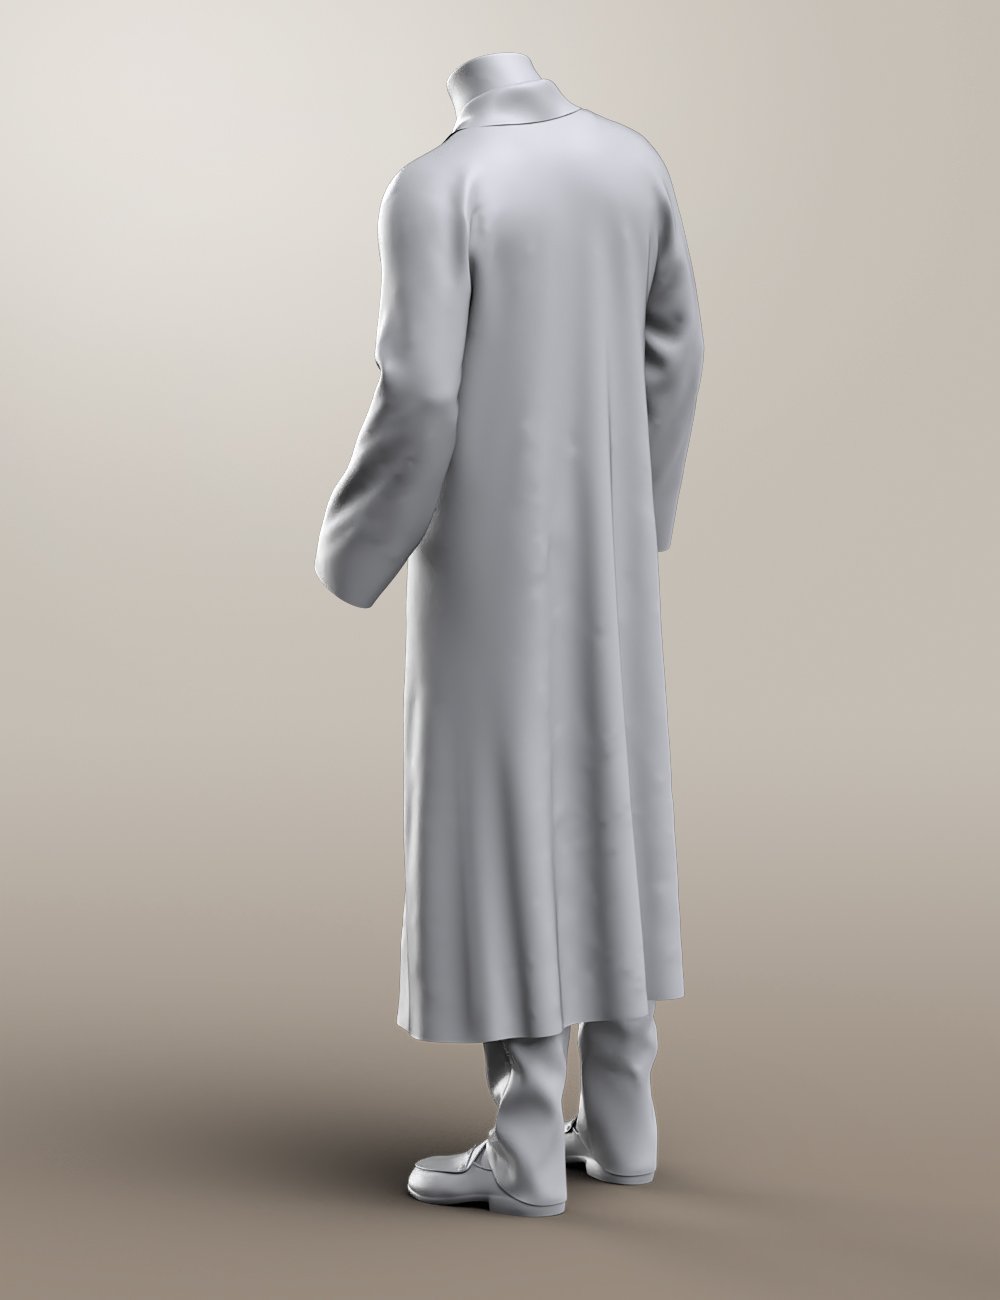 Winter Dweller for Genesis 8 Male(s) by: Ravenhair, 3D Models by Daz 3D